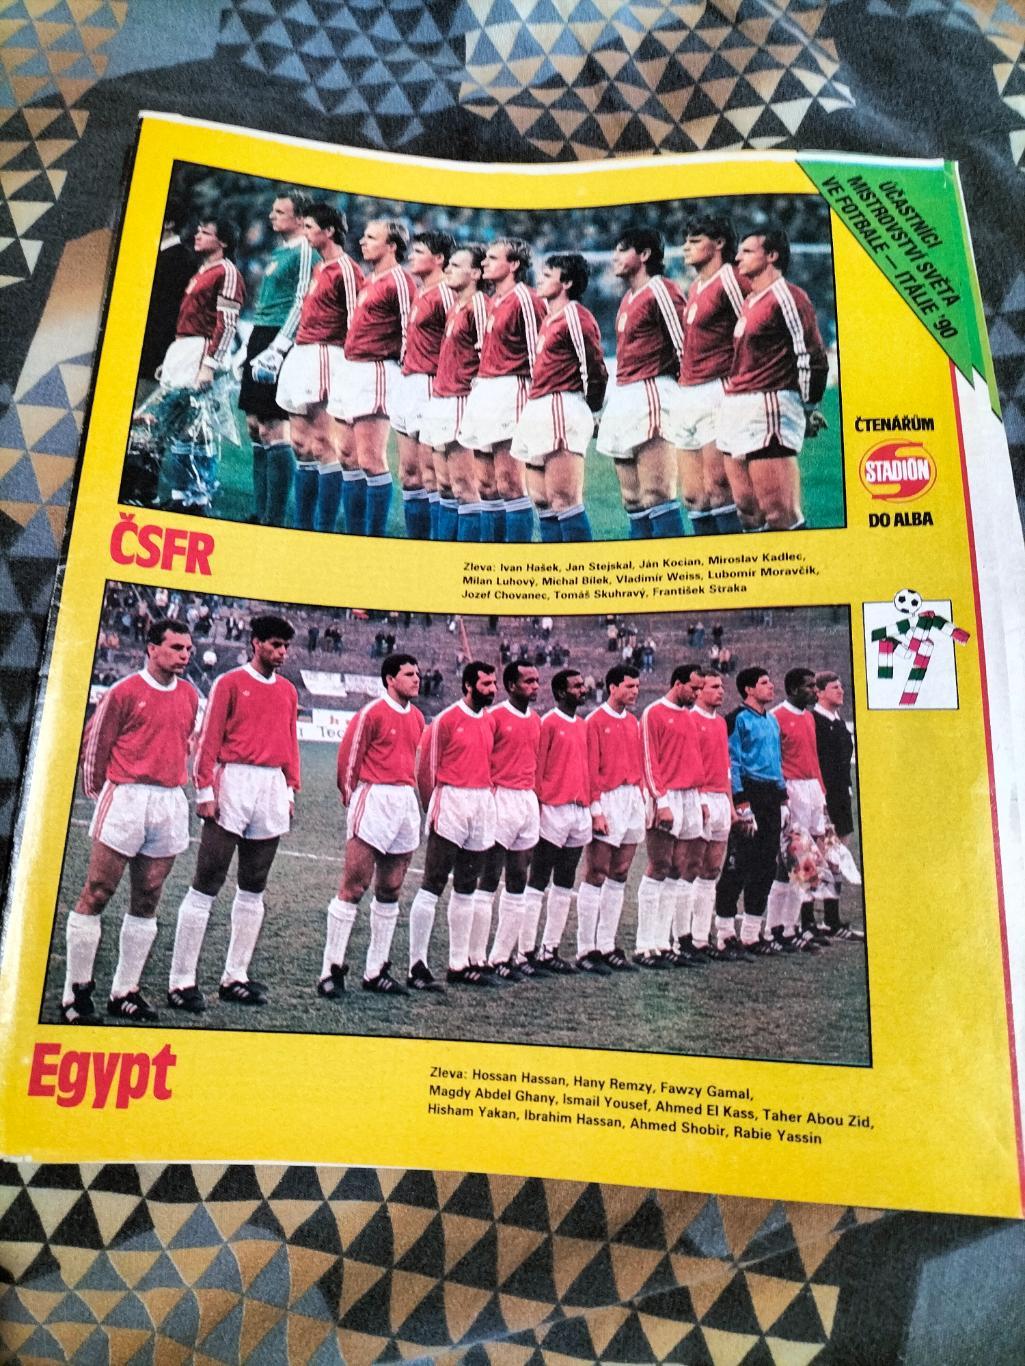 Постер из журнала Стадион сб.ЧСФР и Египта.